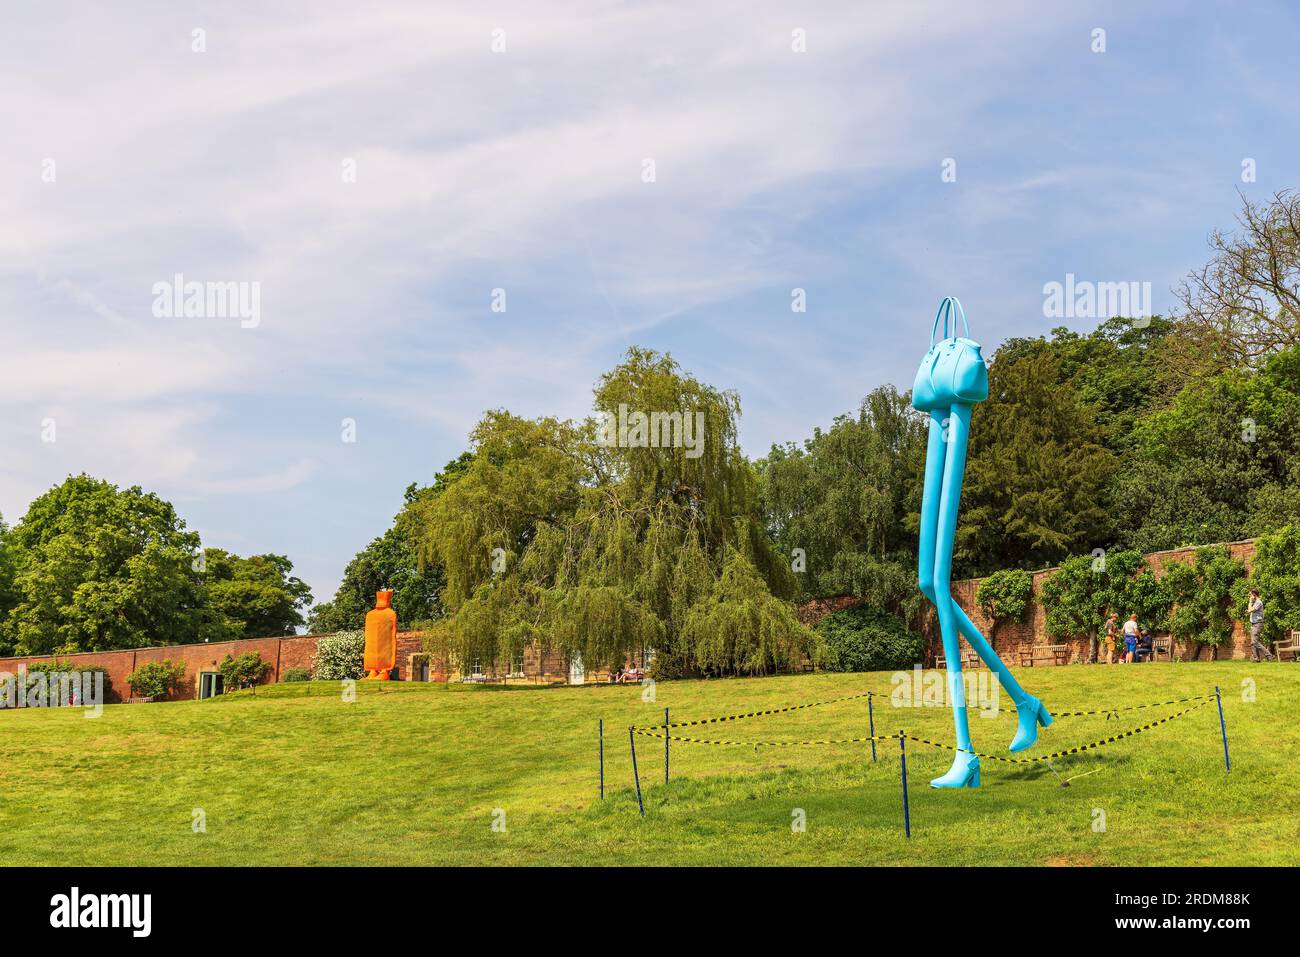 Ambientazione scenica per la mostra d'arte Trap of the Truth che mostra Erwin Wurm, Step (Big), 2021. Installazione presso lo Yorkshire Sculpture Park. Foto Stock